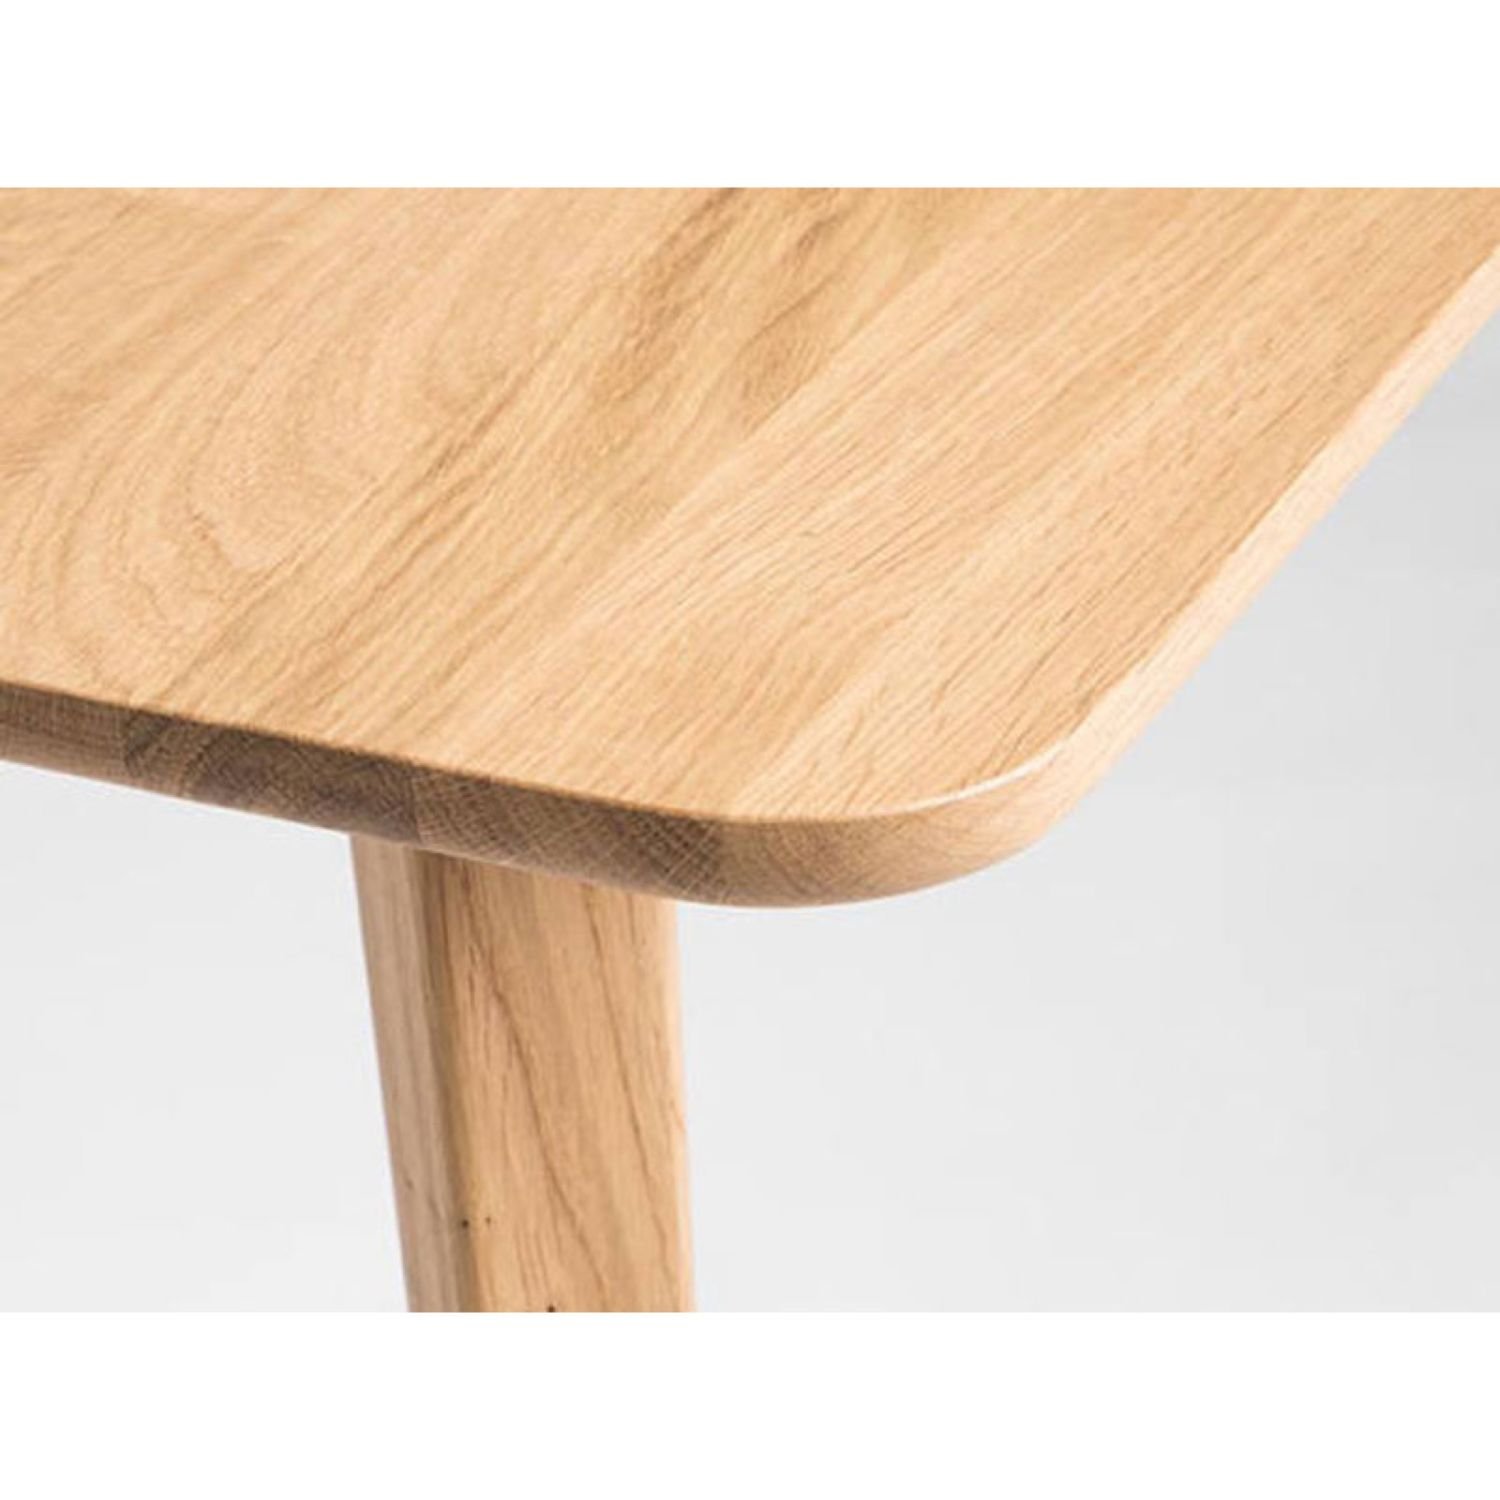 Стол с закругленными краями. Стол обеденный Оливер-04 дуб. Oak percorsi стол. Стол кухонный массив дуба. Стол обеденный с закругленными углами.